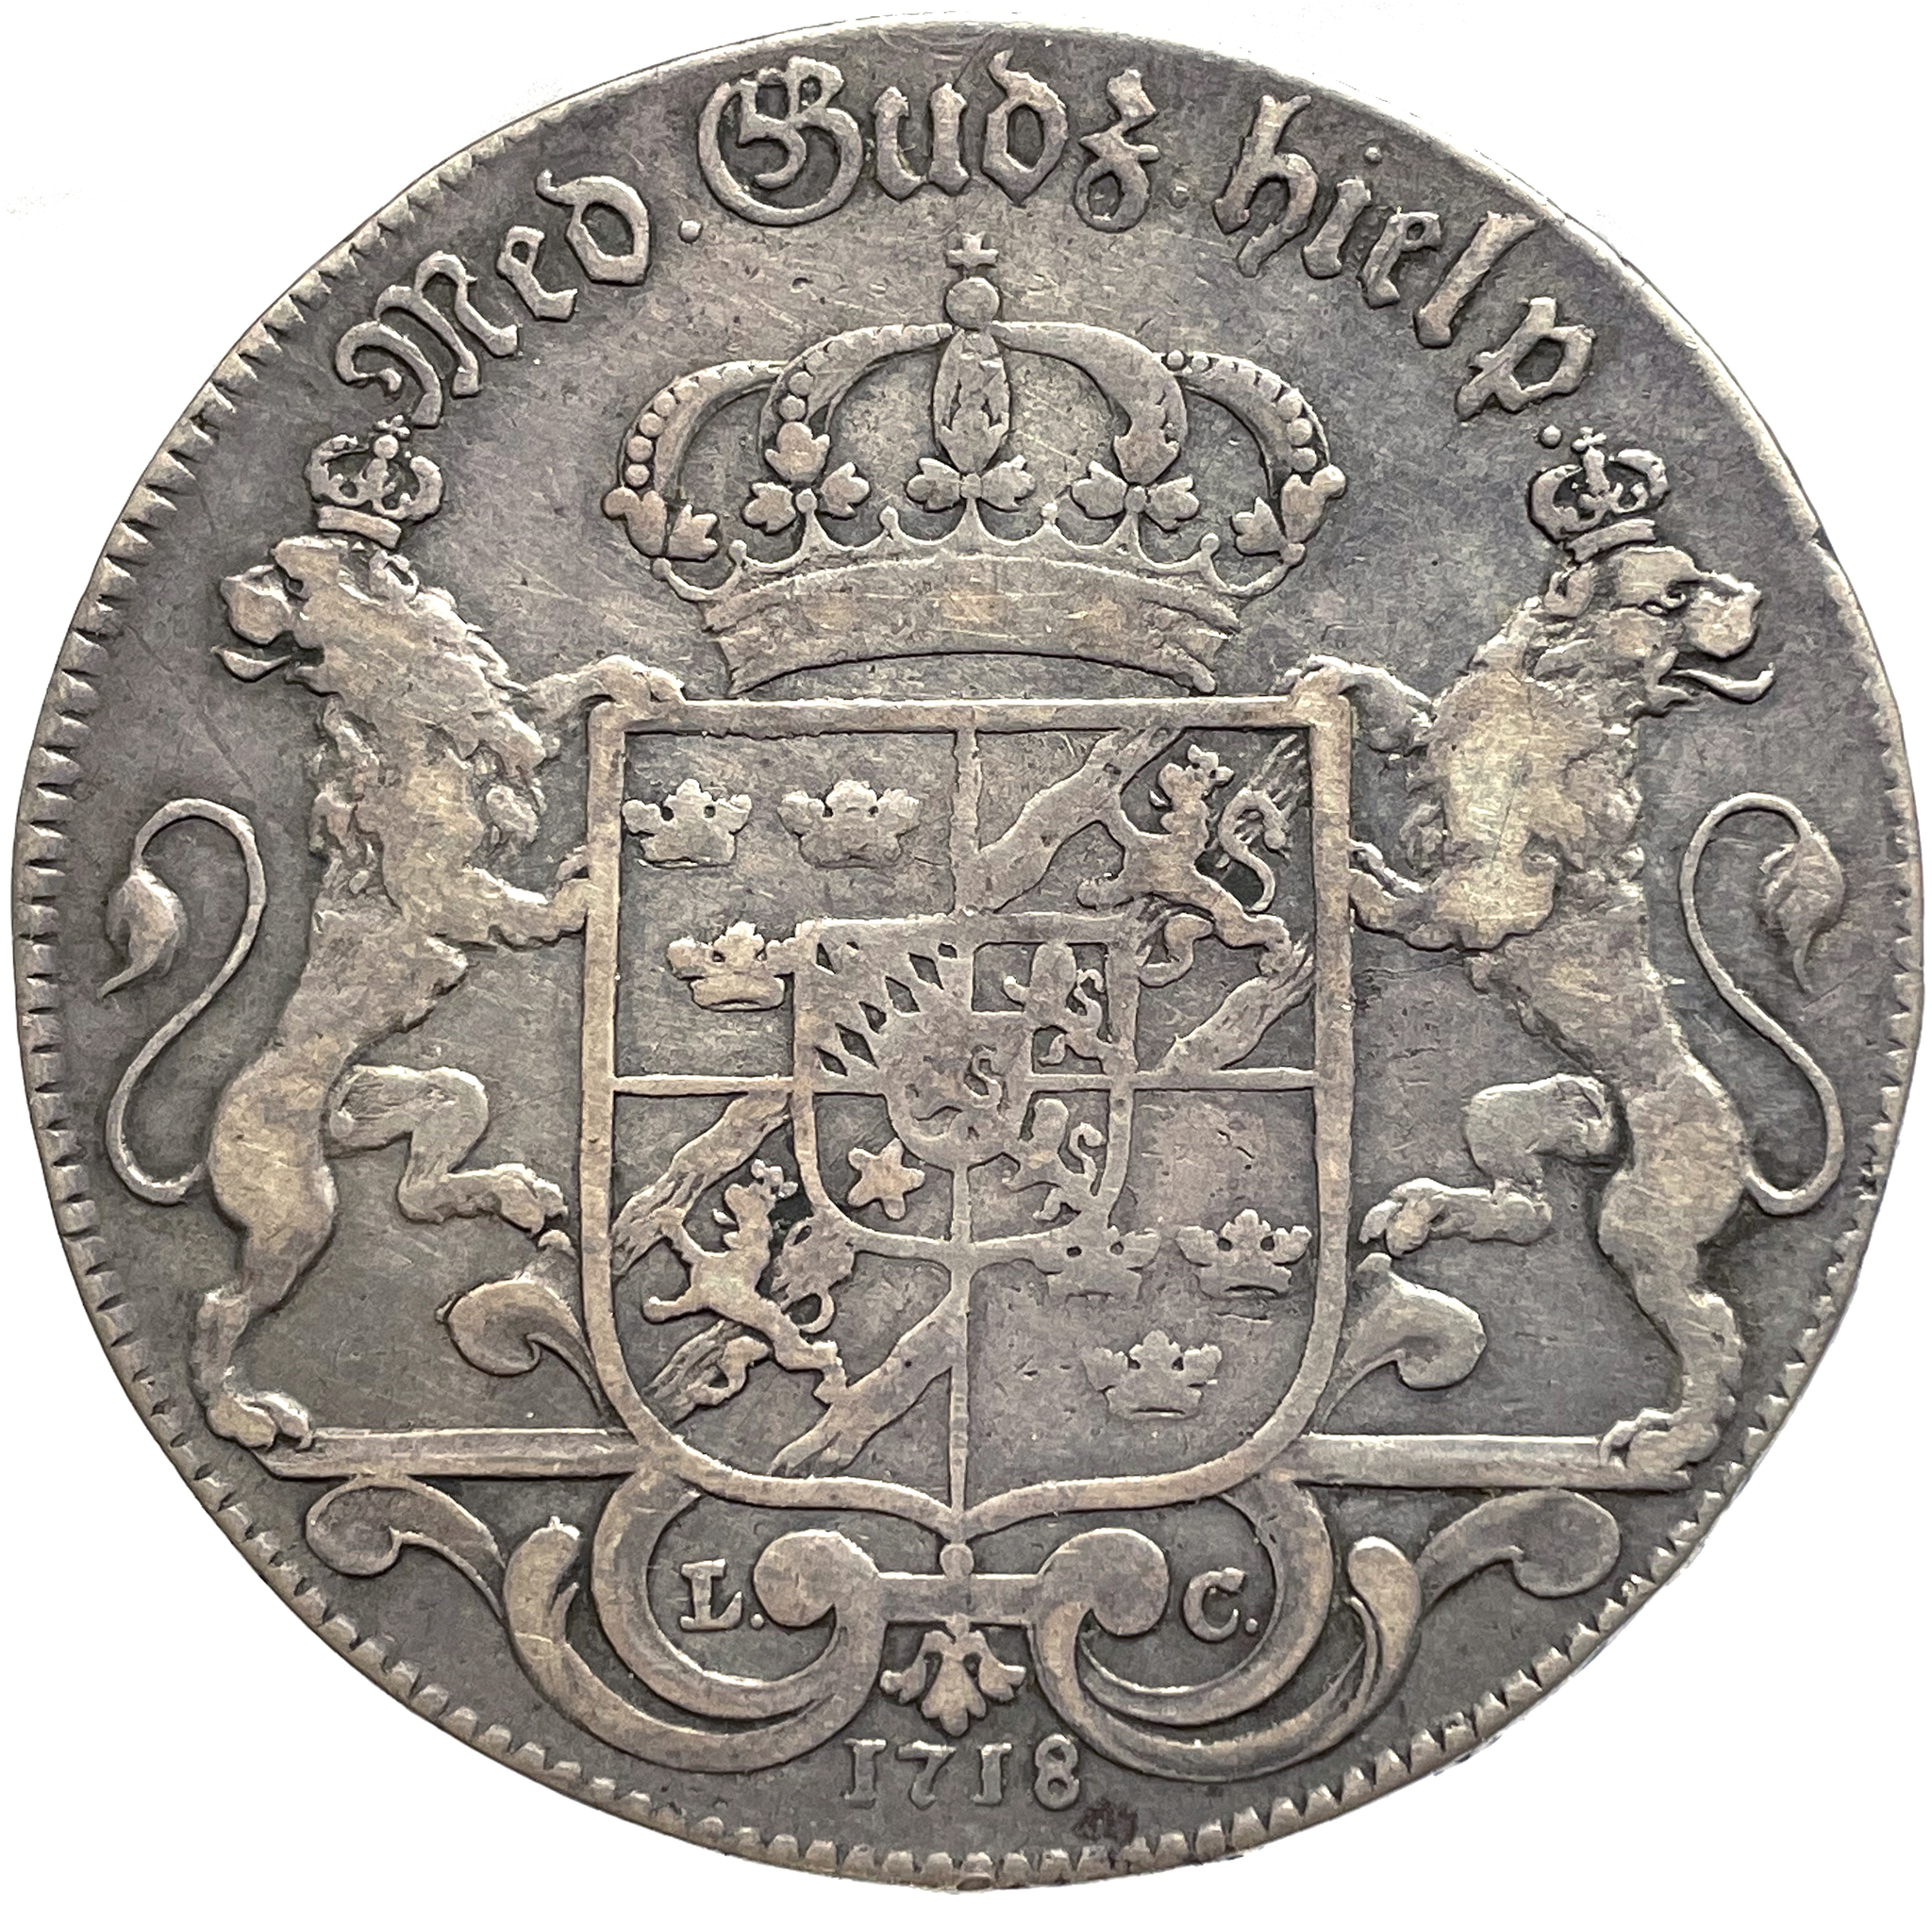 Karl XII - Riksdaler 1718 av Hedlinger - Typmynt